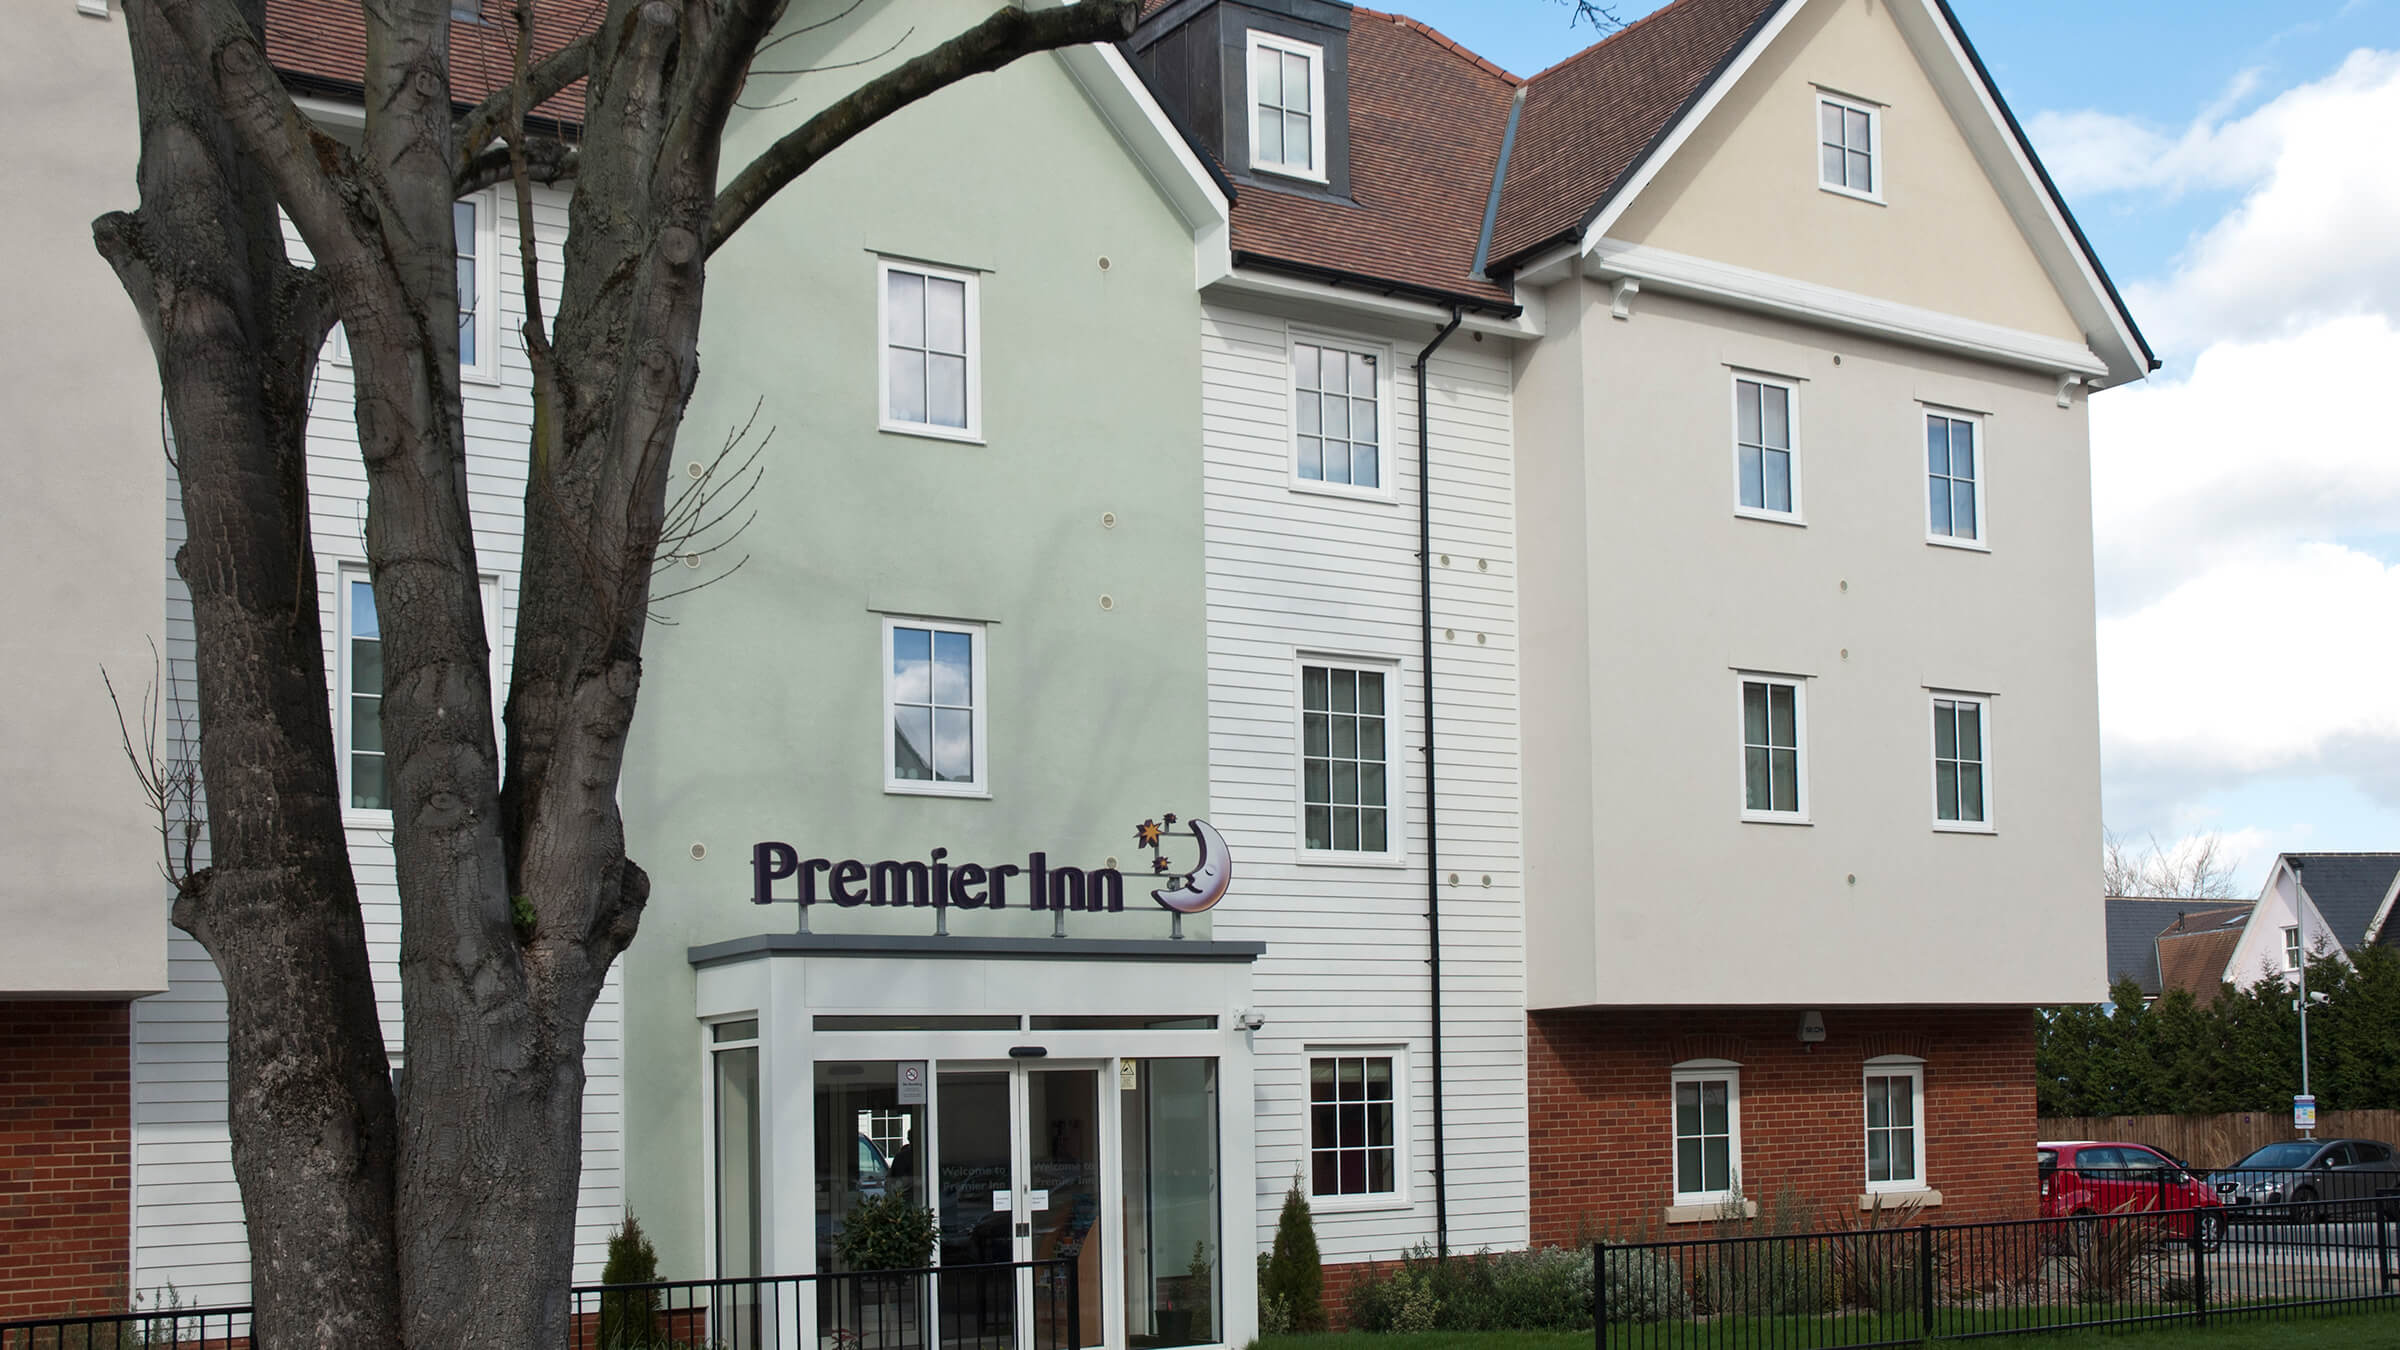 Premier Inn, Colchester